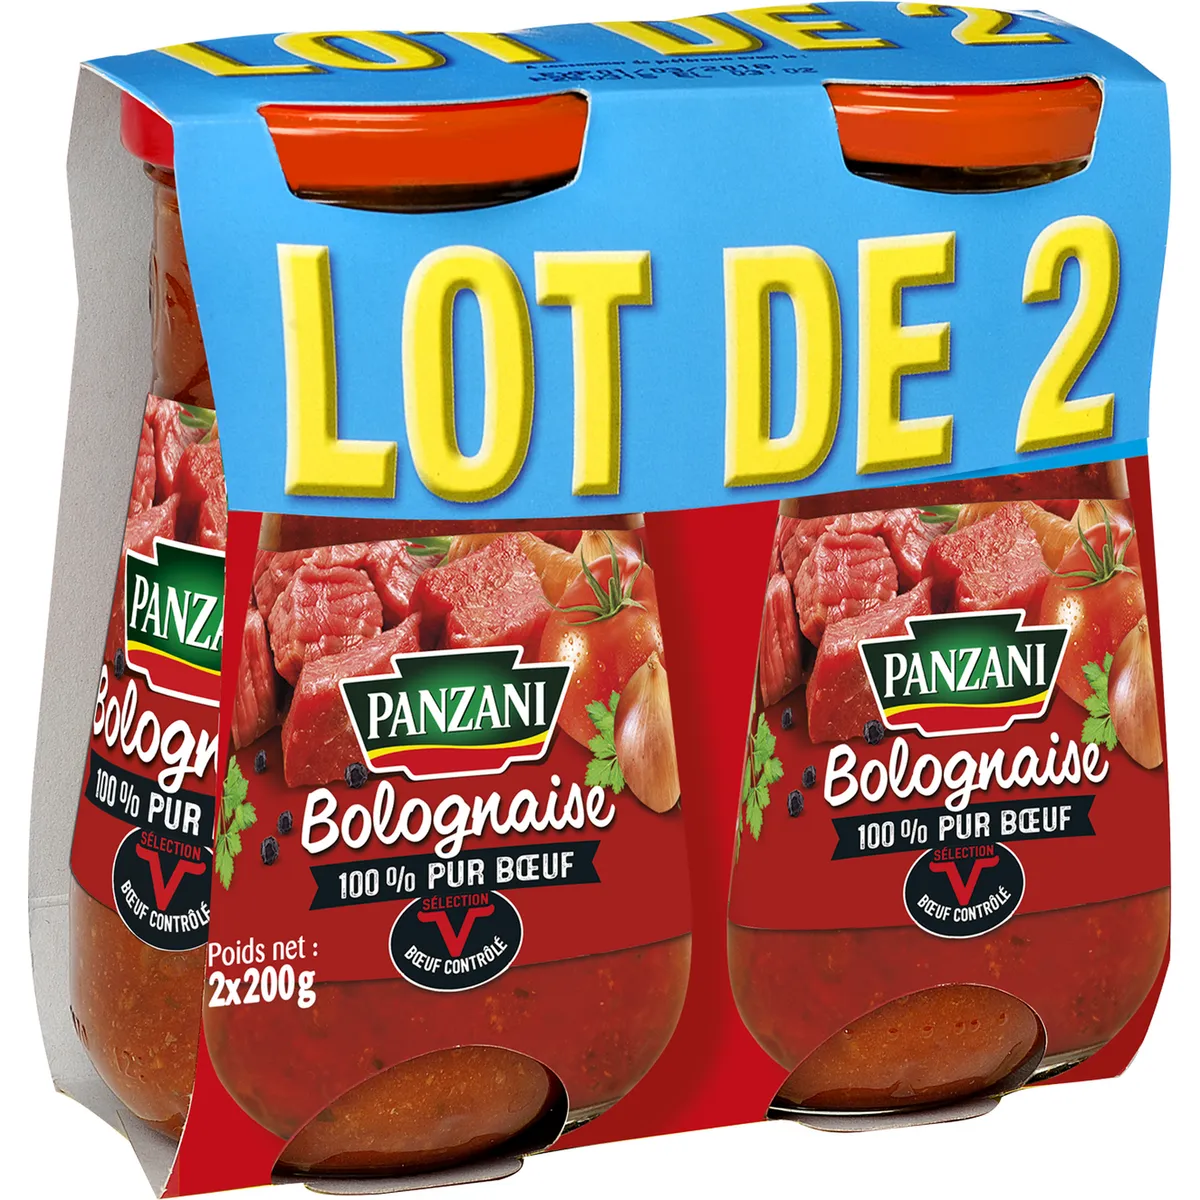 sauce bolognaise 100% pur bœuf panzani